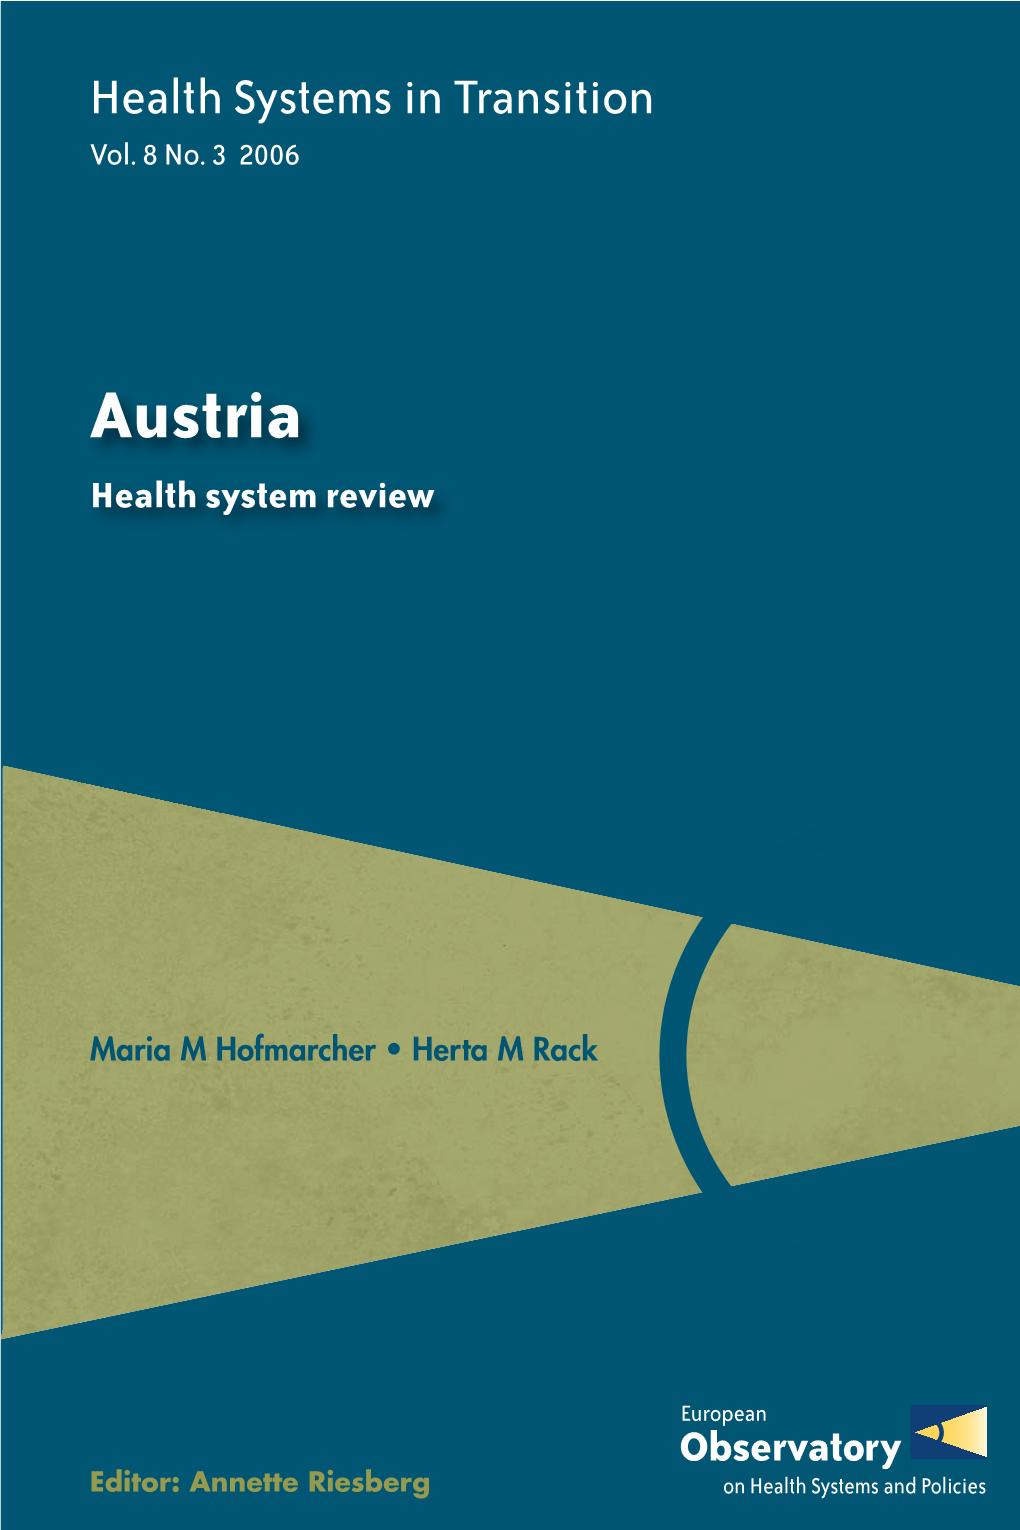 Austria: Health System Review 2006